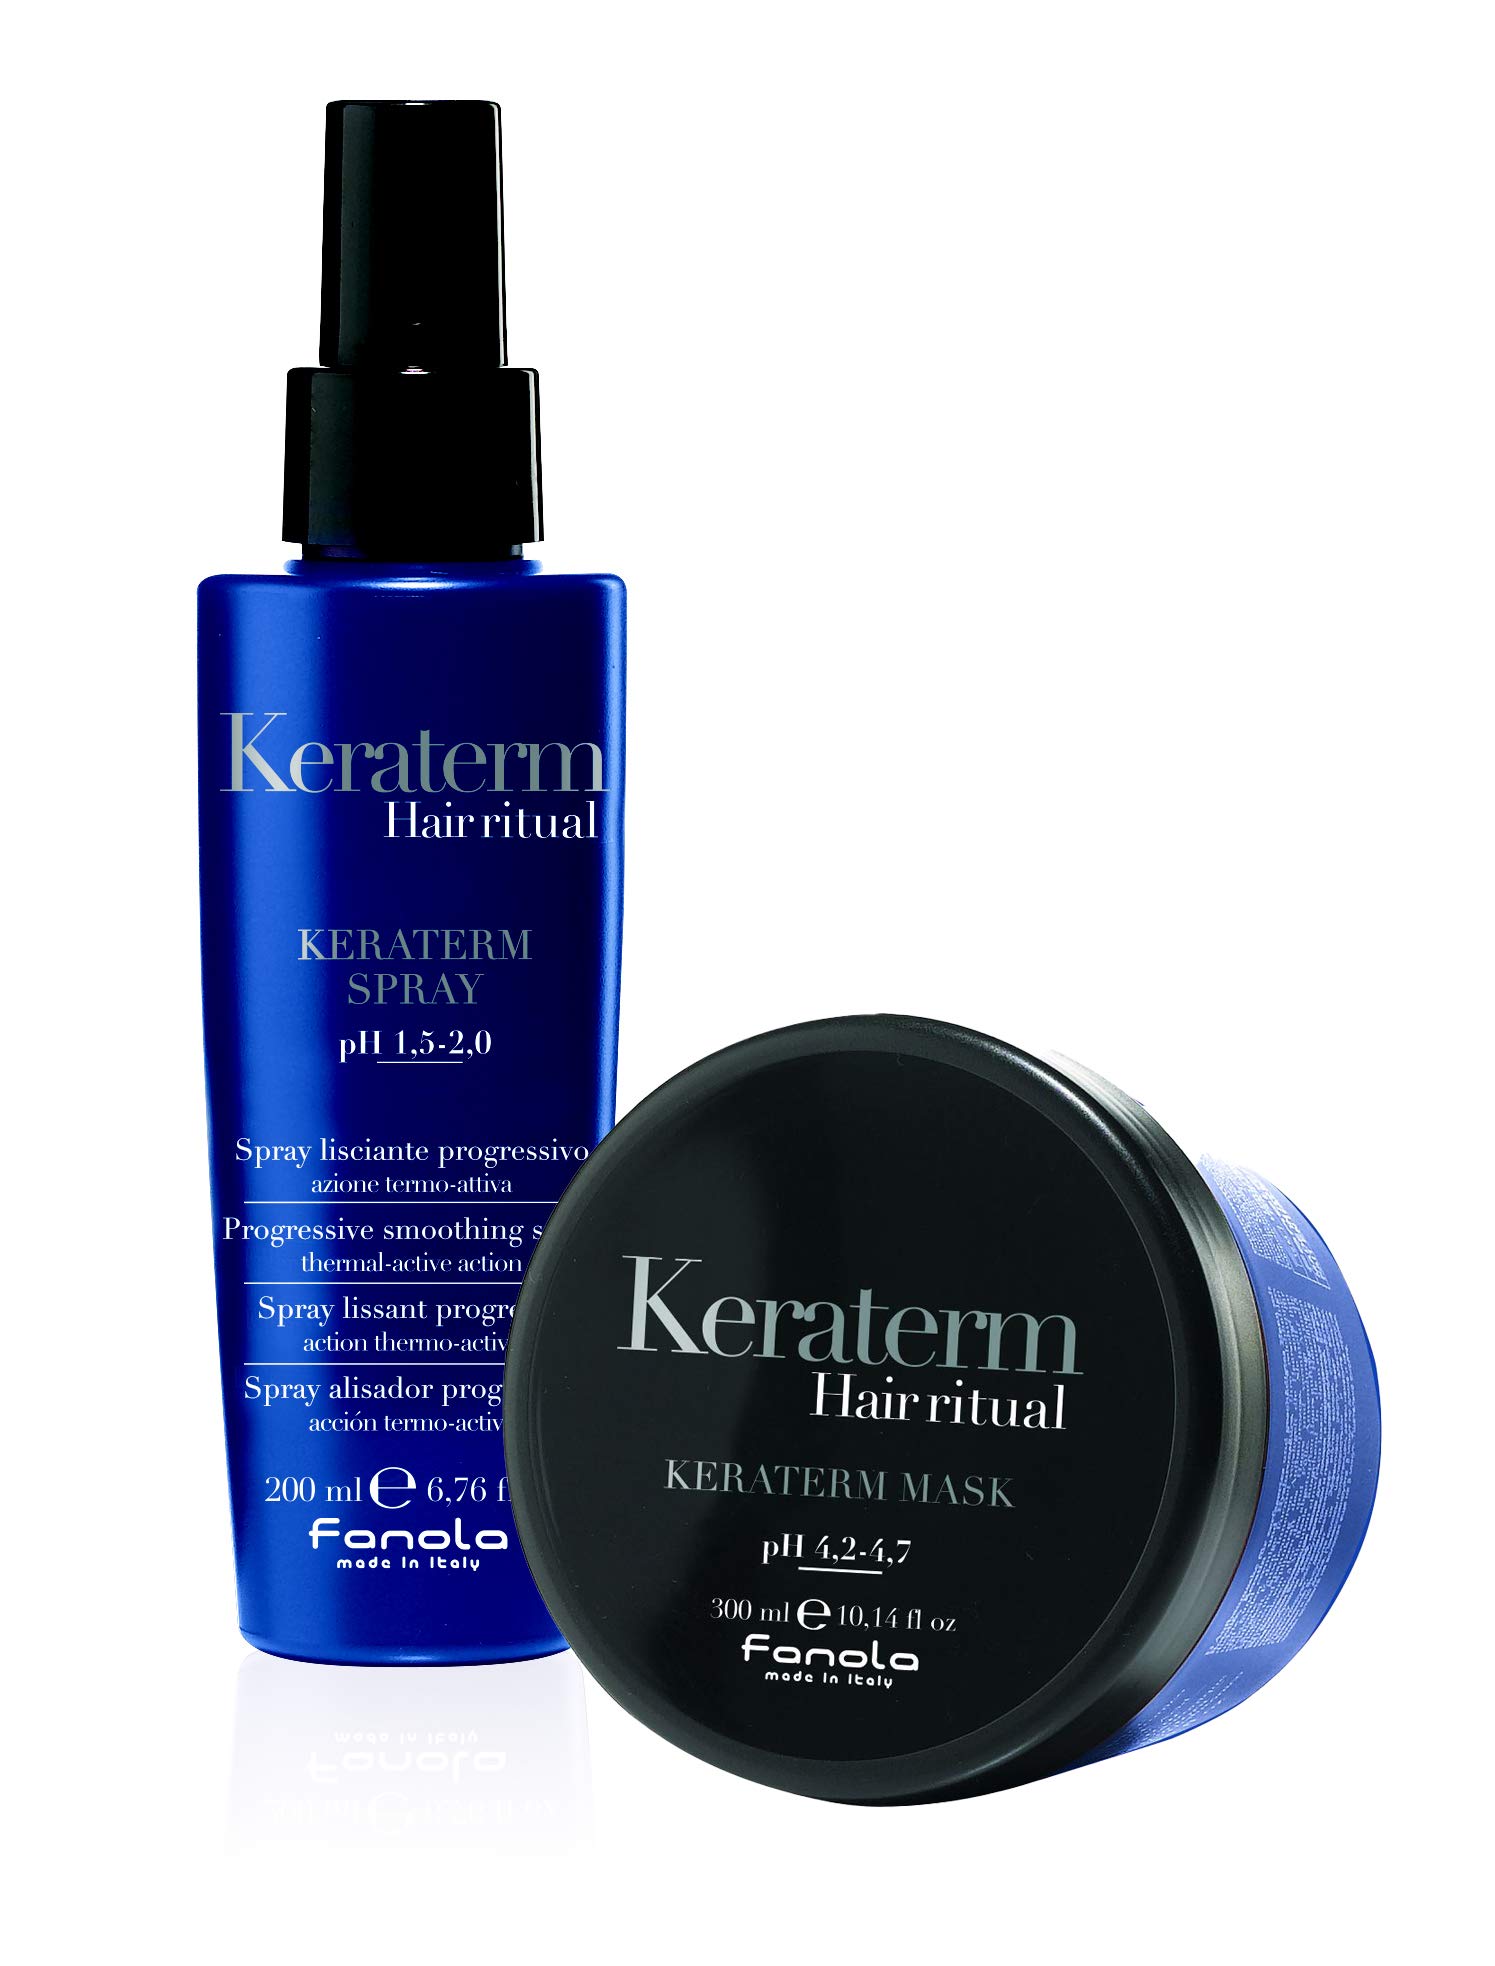 Fanola KERATERM Set: Hair Ritual Spray 200 ml & Hair Ritual Maske 300 ml